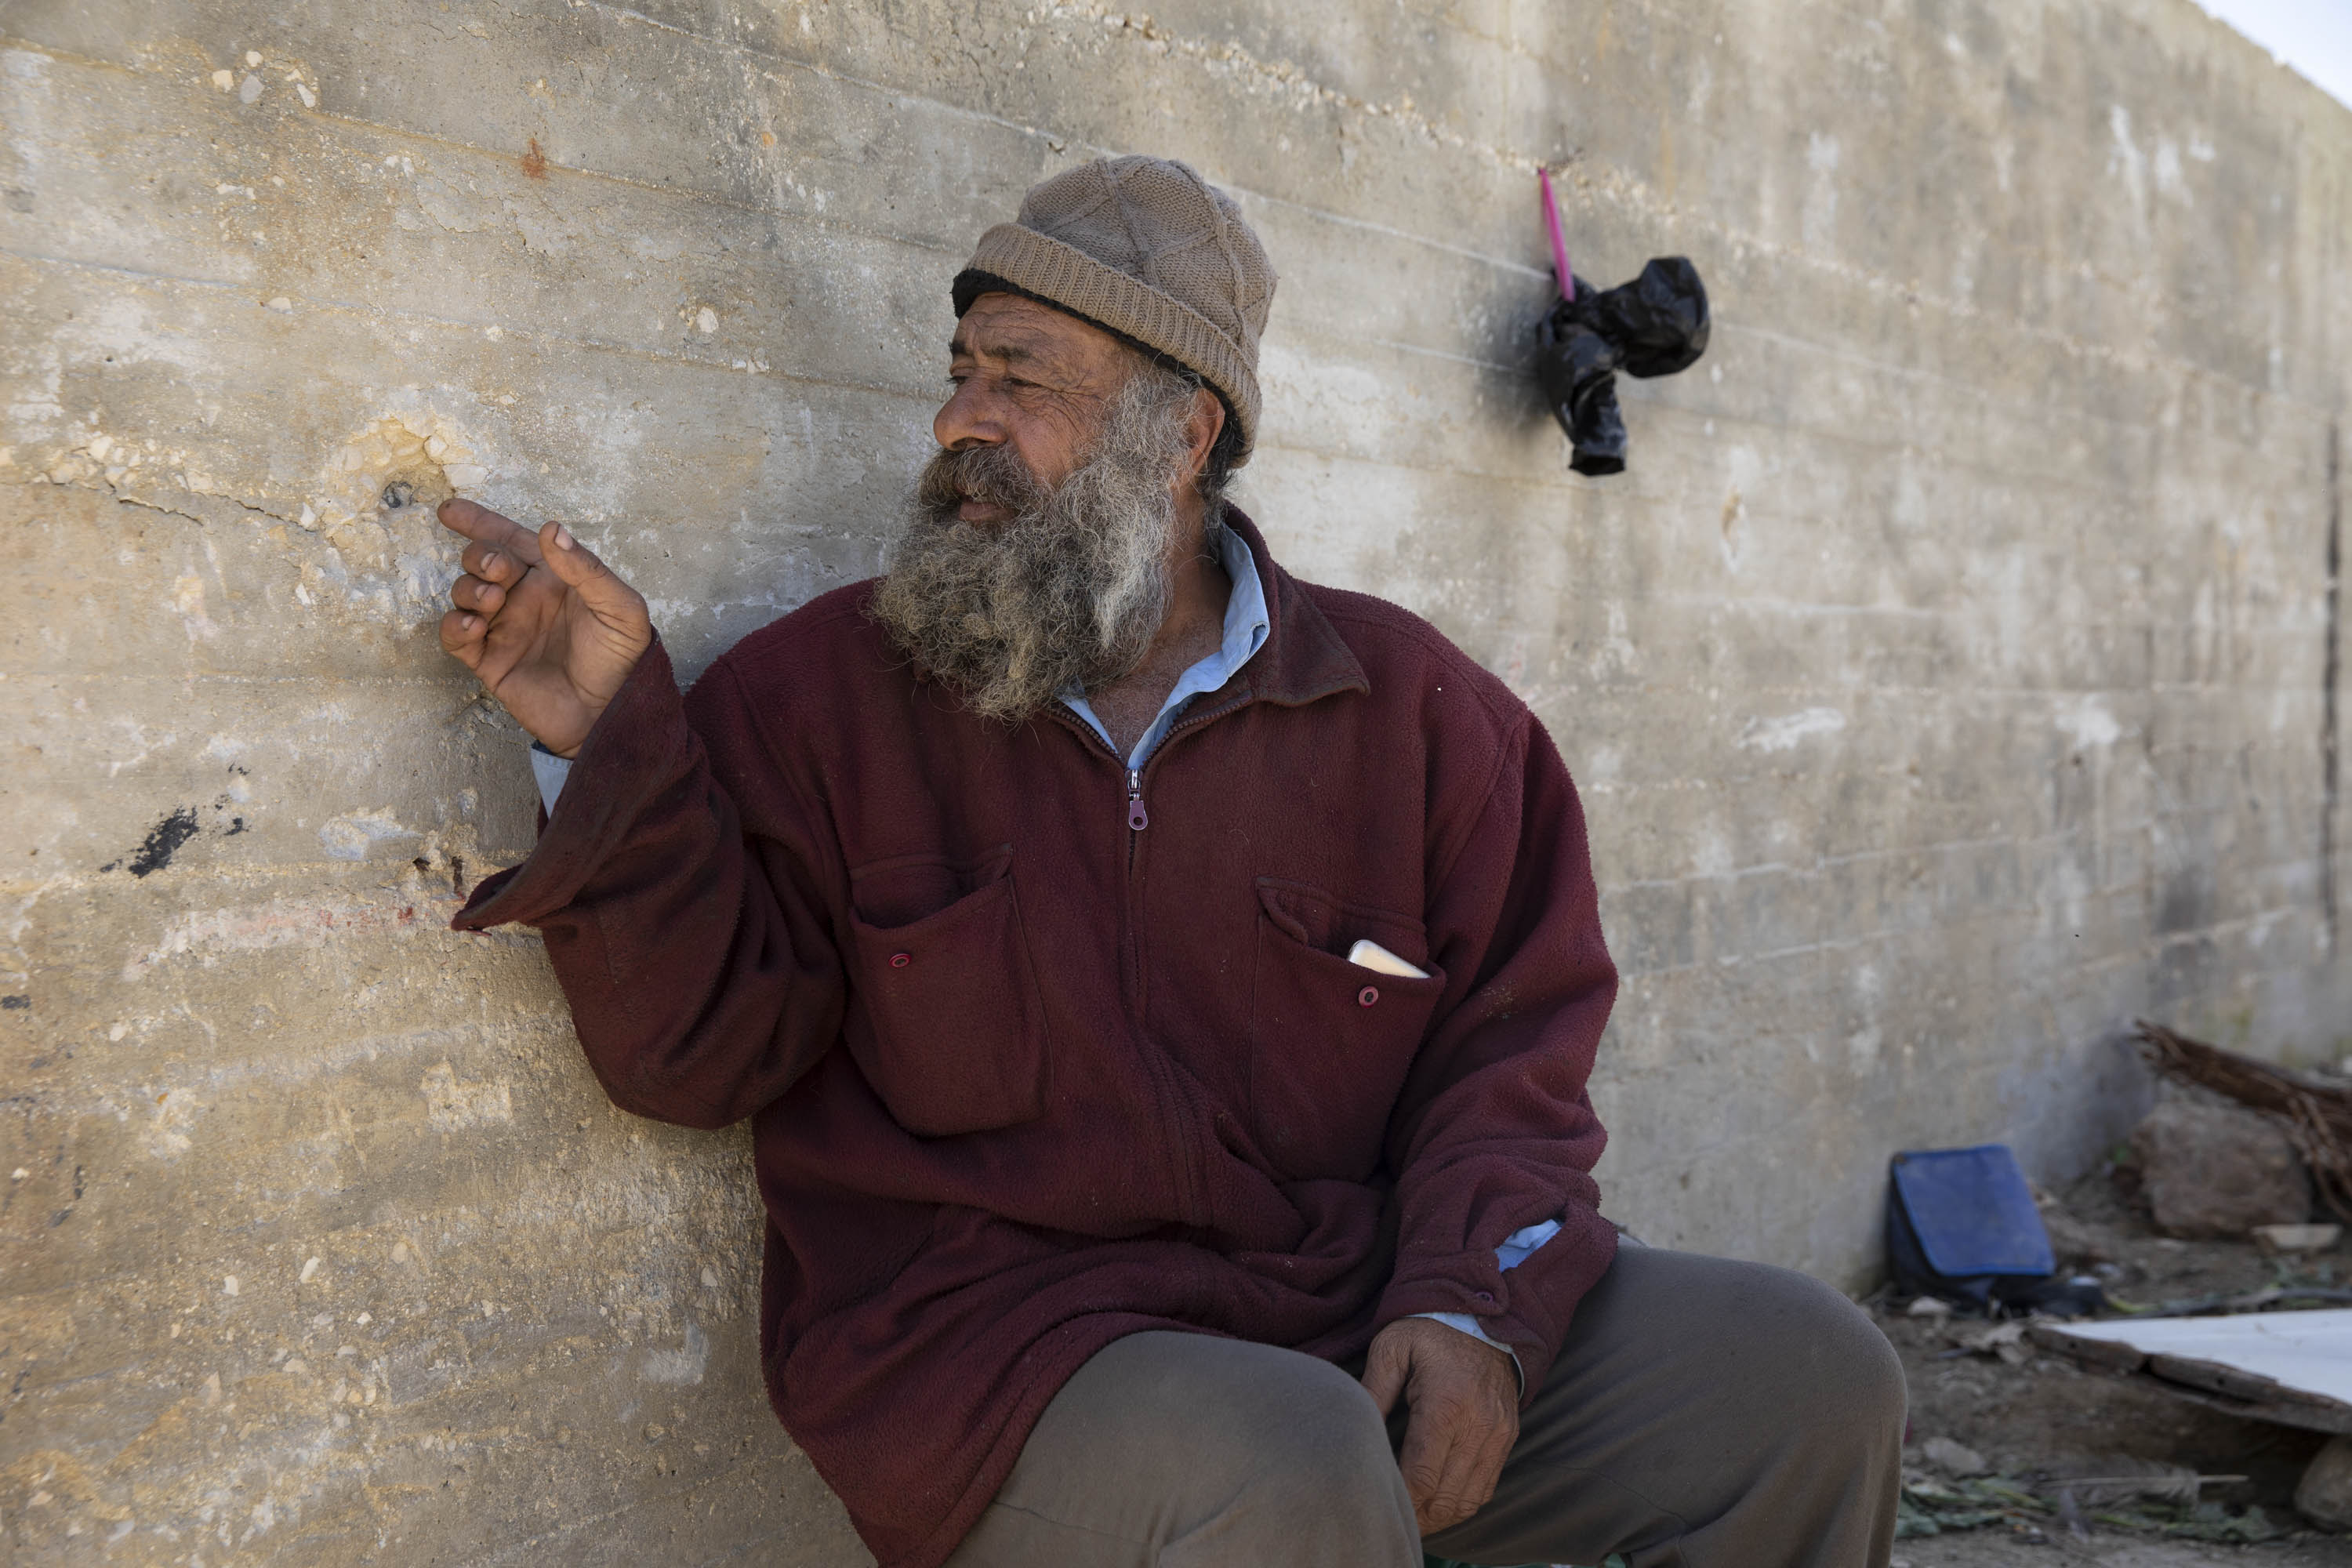 ״הקליע פספס את ראשי בכמה סנטימטרים״. מוניר סולימאן מהכפר עוריף (אורן זיו/ אקטיבסטילס)